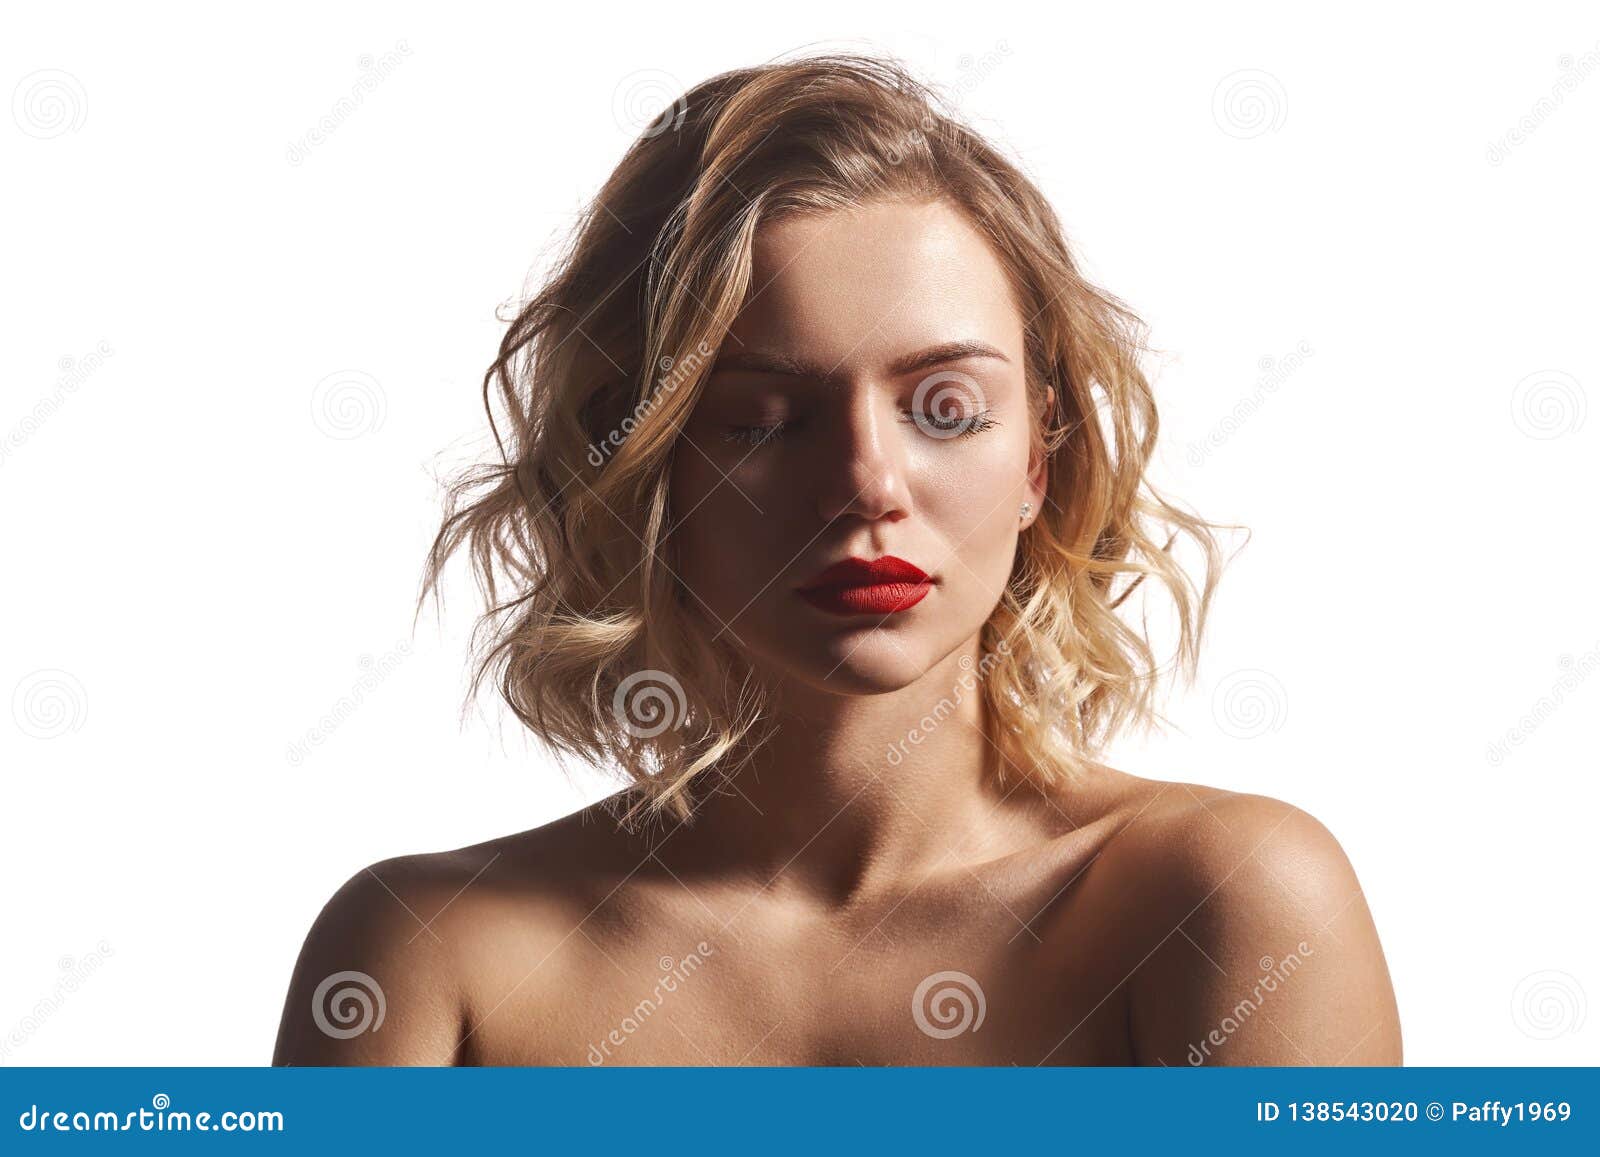 摆在与闭合的眼睛的赤裸美女特写镜头 库存照片. 图片 包括有 肉欲, 华美, 干净, 关心, 脸色, 白种人 - 137392902